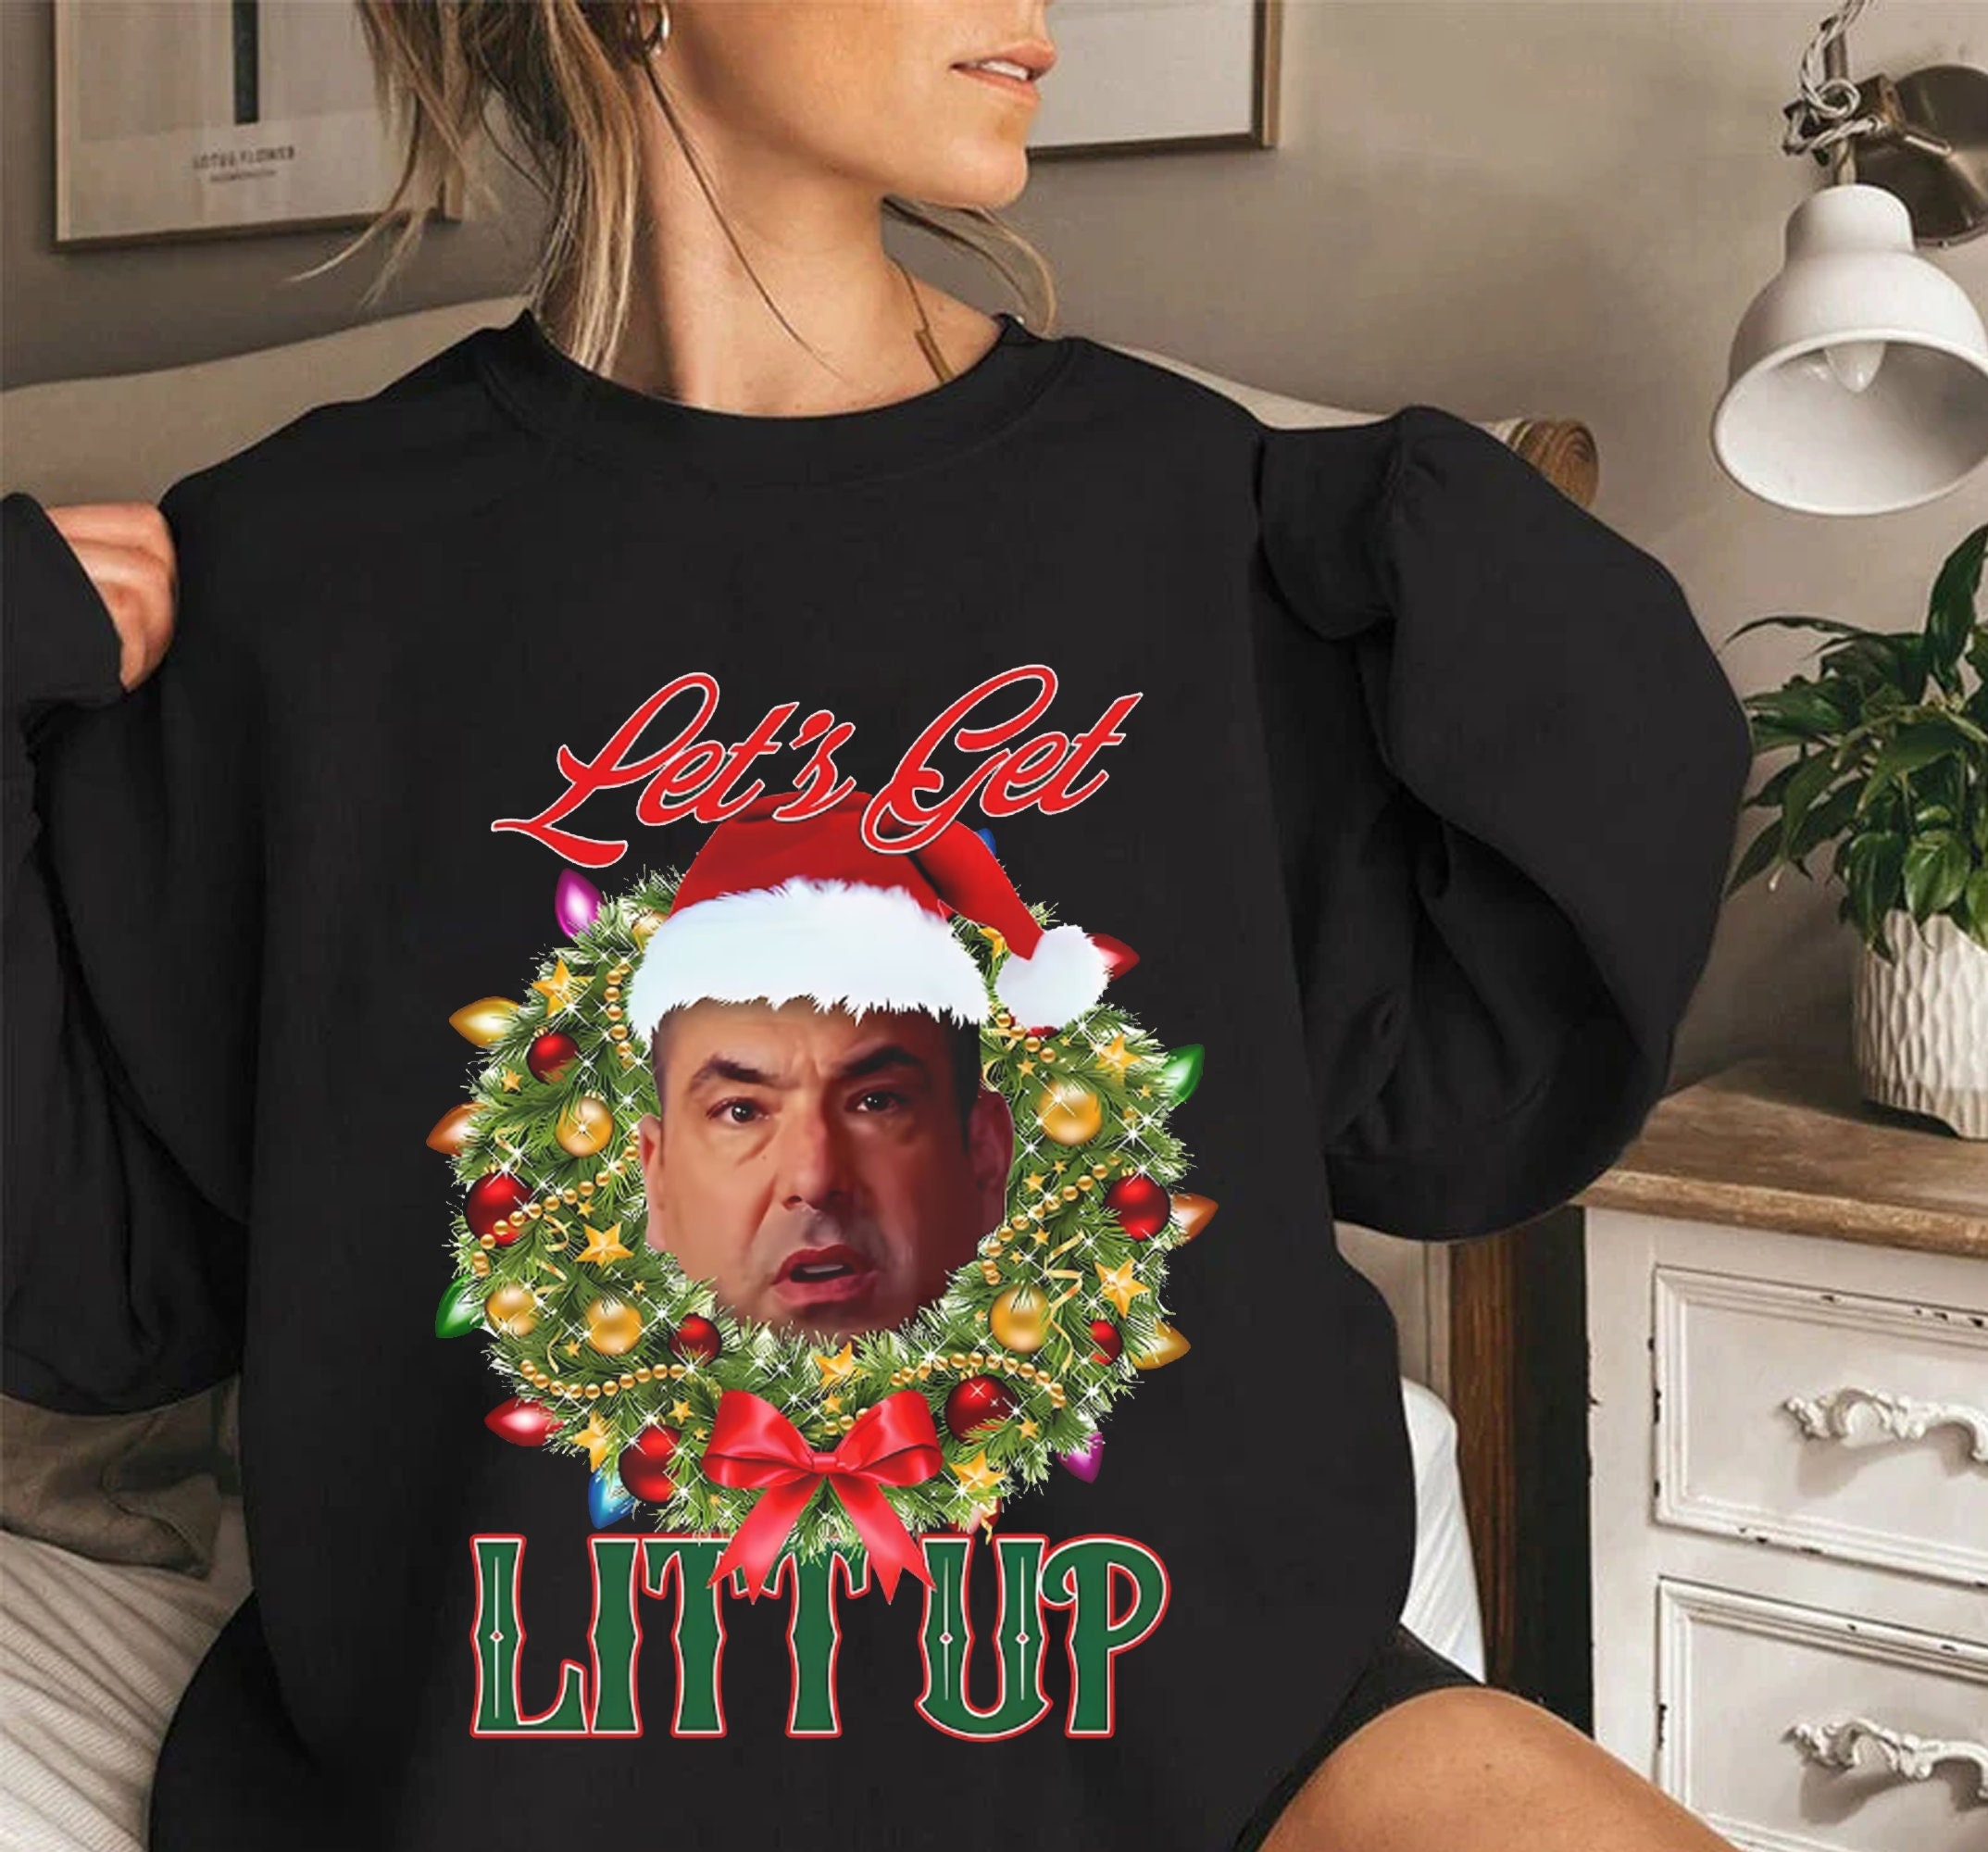 Suits Louis Litt You Just Got Litt Up Tshirt T-shirt by theshirtnerd  Redbubb #Aff , #AFF, #Litt, #Loui…